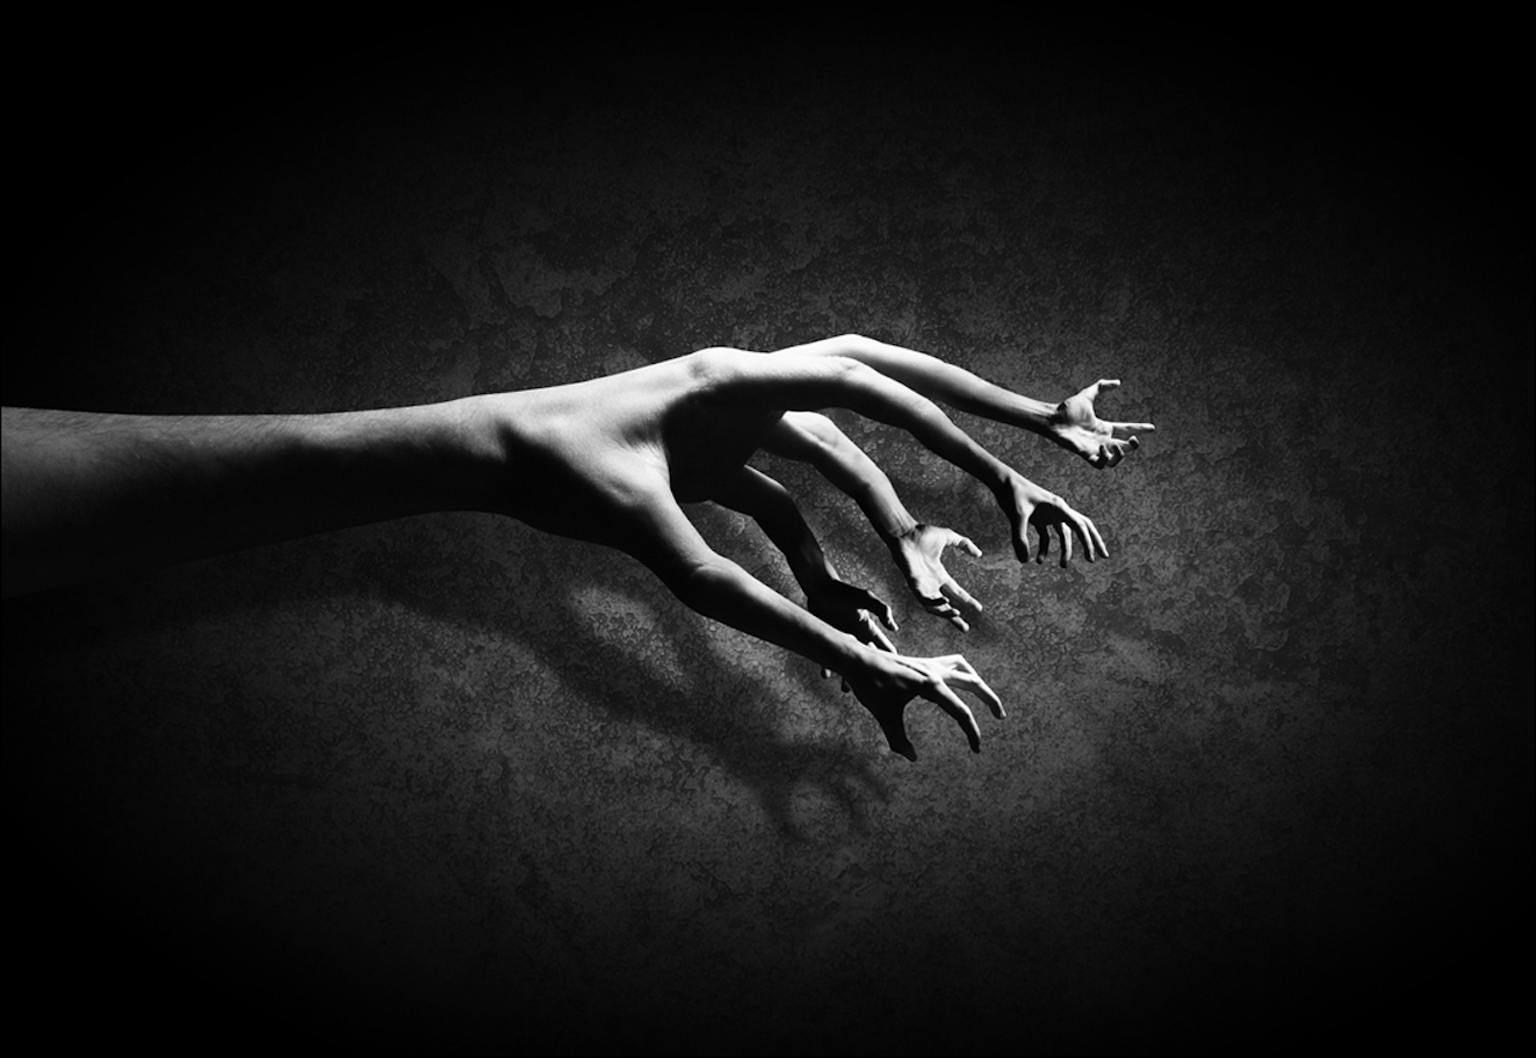 Een artistieke zwart-witfoto van een hand waarvan de vingertoppen handen zijn.